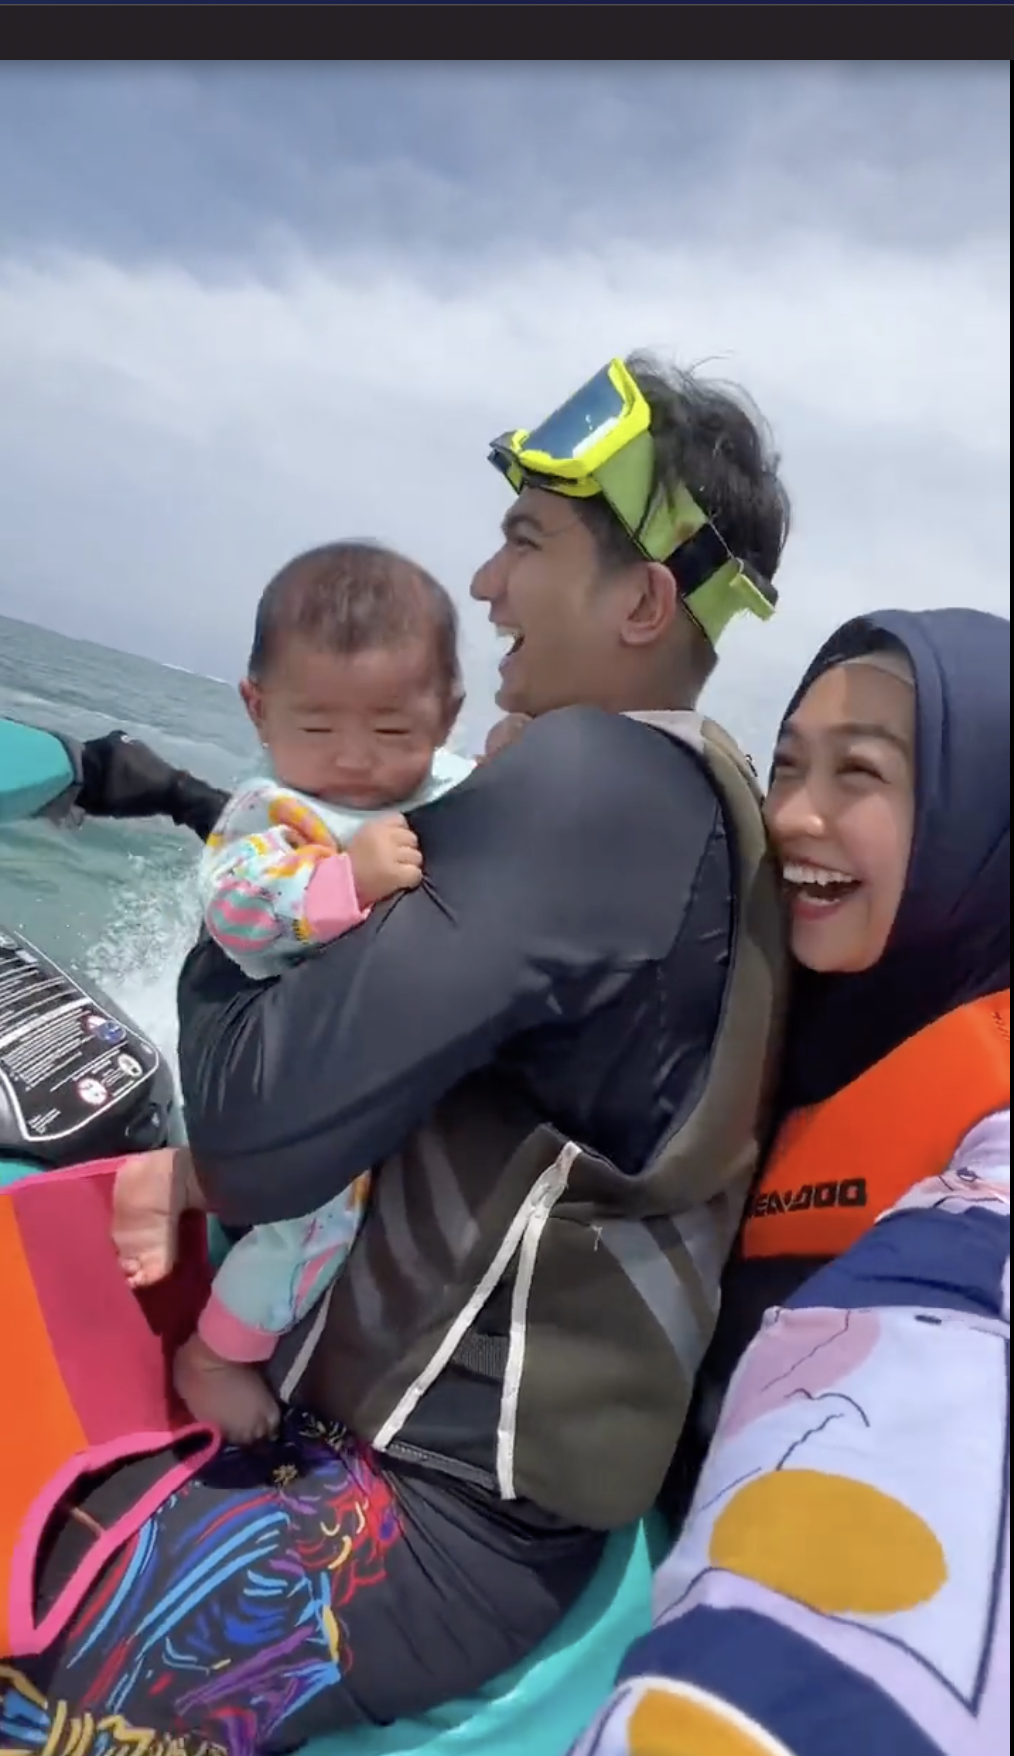 "Non OK" – Ce couple mari et femme amenant un bébé sur un jet ski reçoit de nombreuses critiques